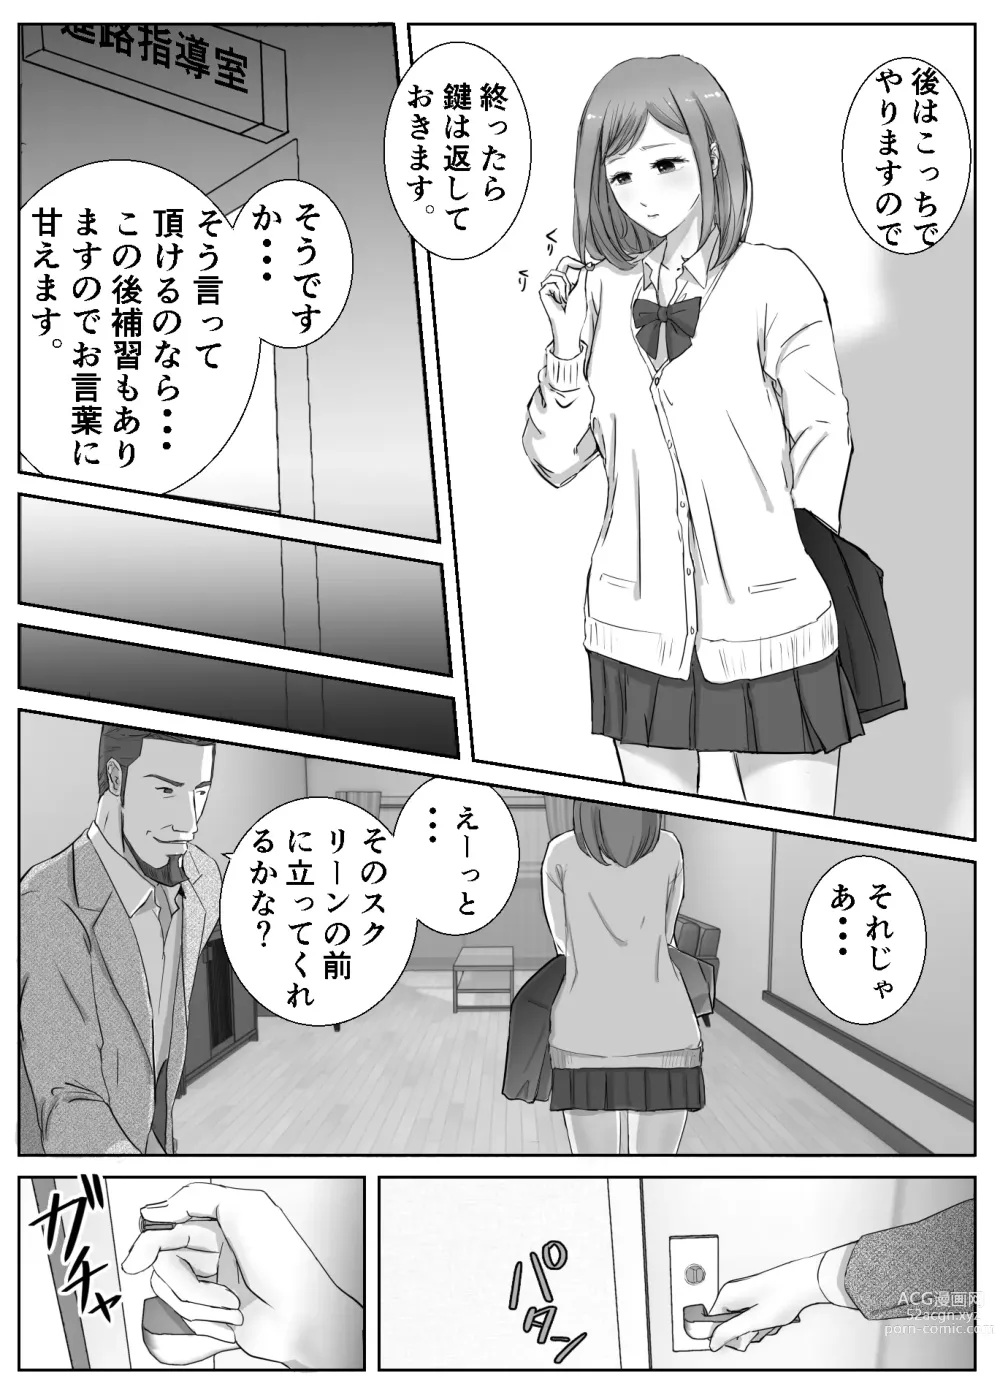 Page 12 of doujinshi Ano Hi no Uso 1